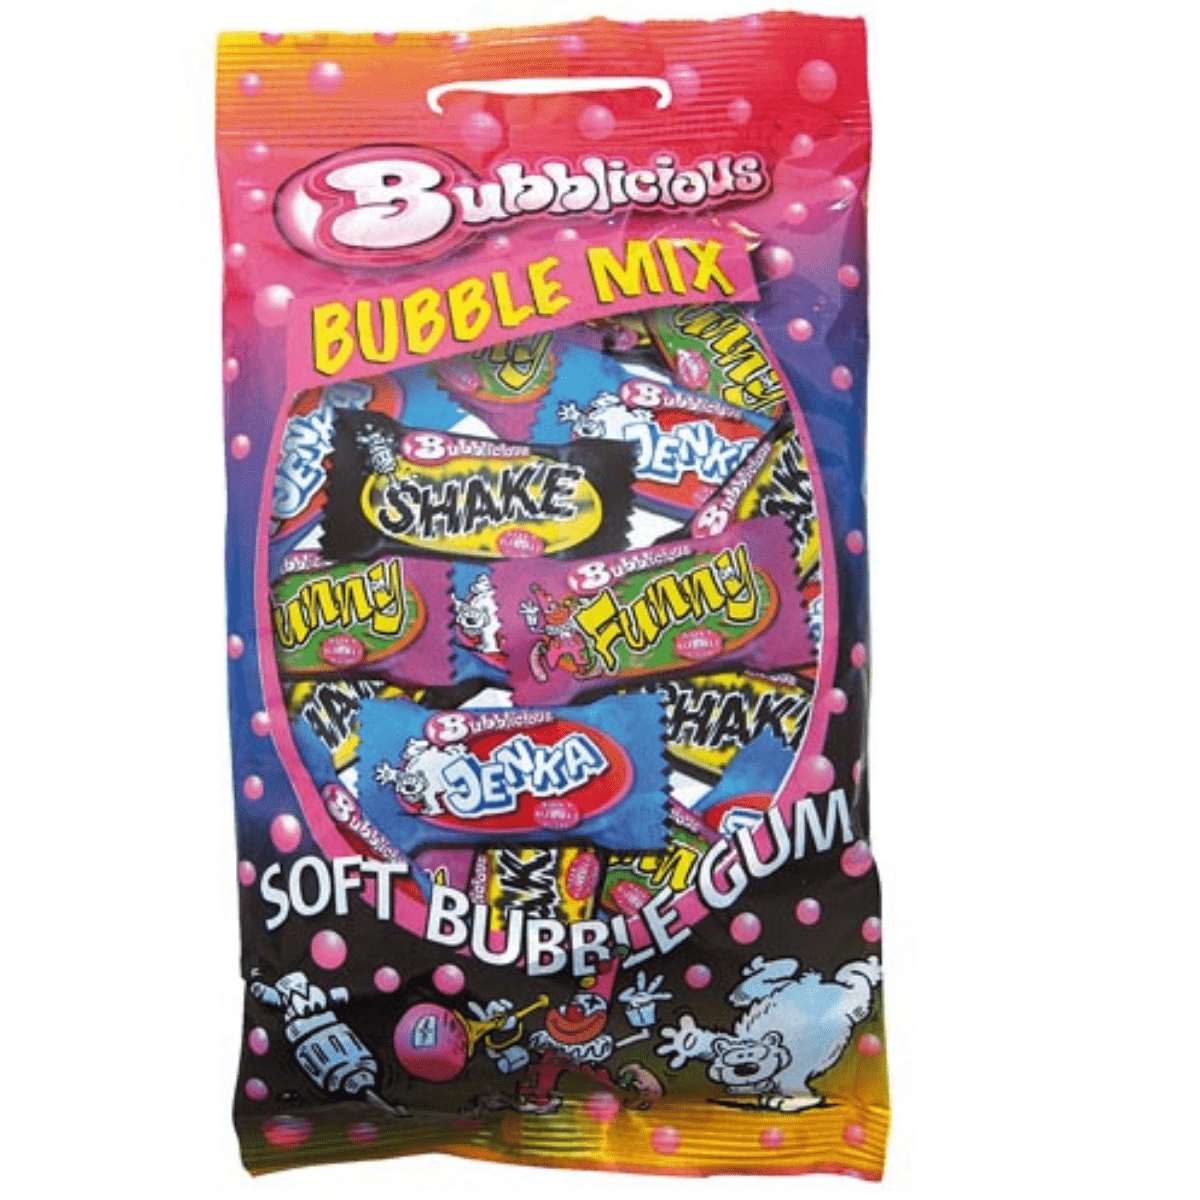 Bubblicious Bubble Gum